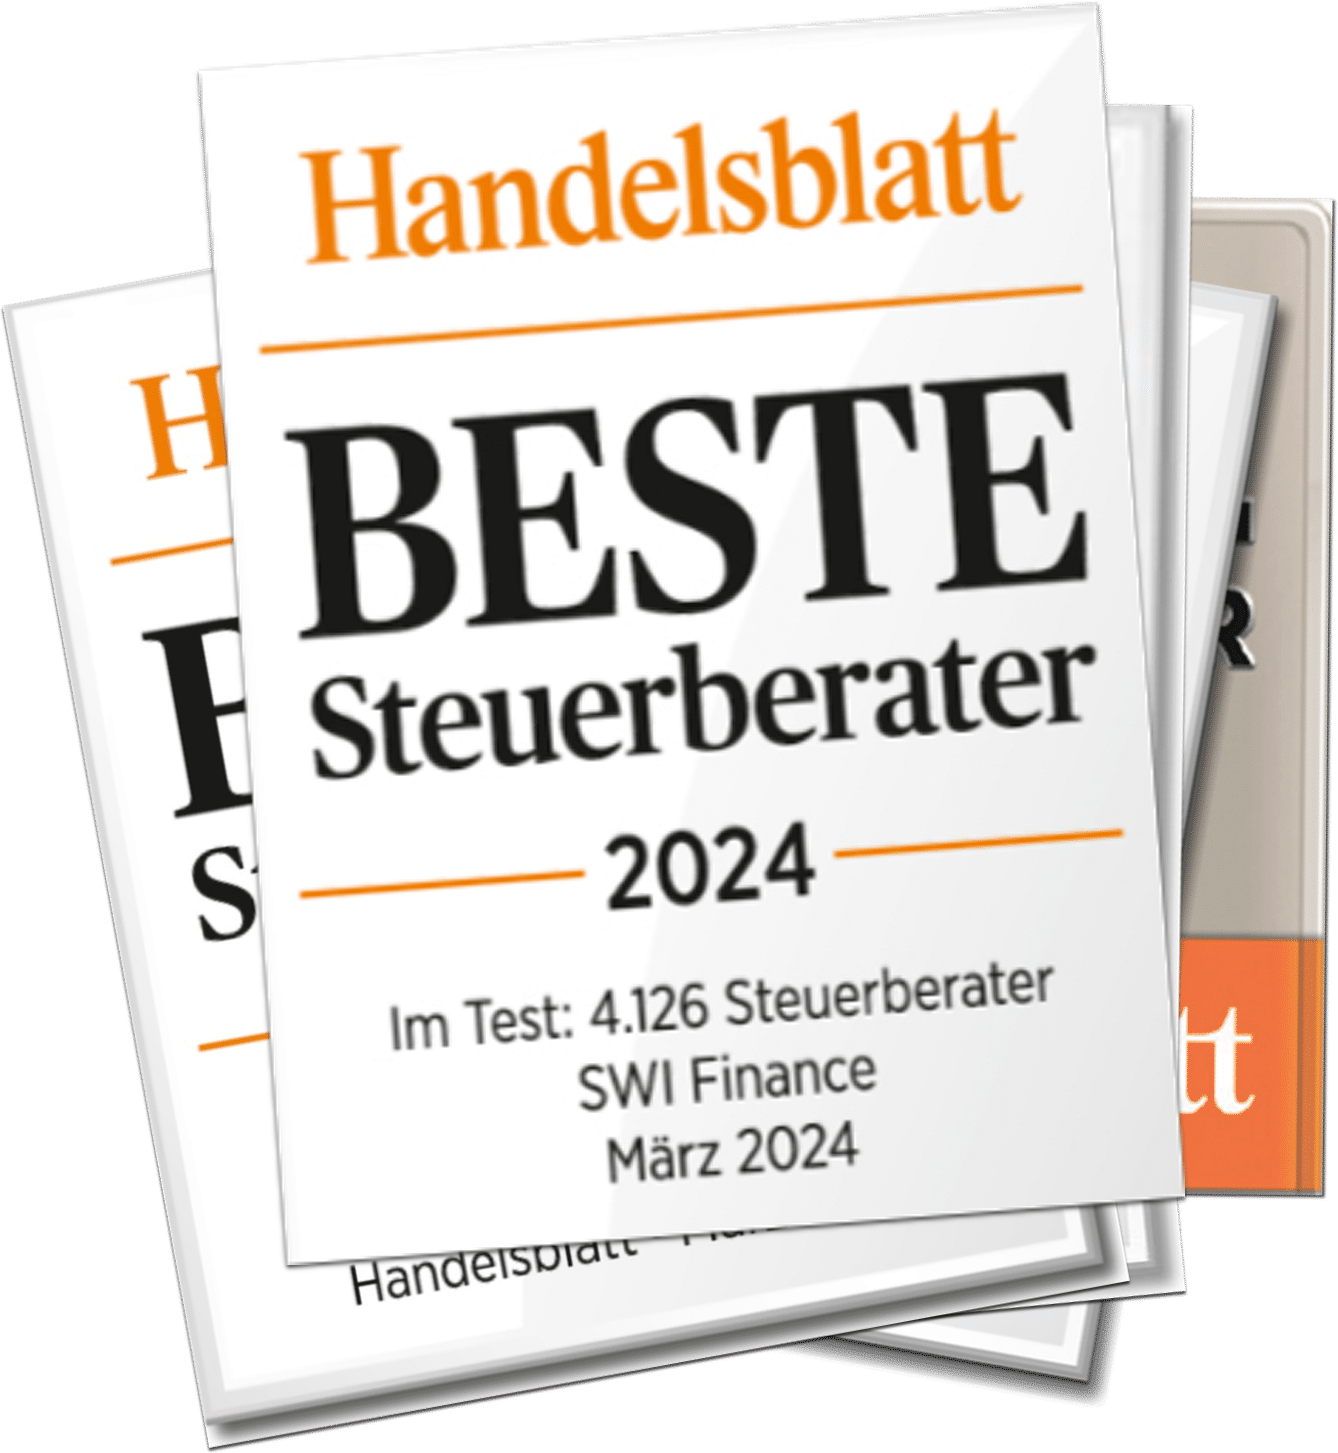 Handelsblatt beste Steuerberater 2024